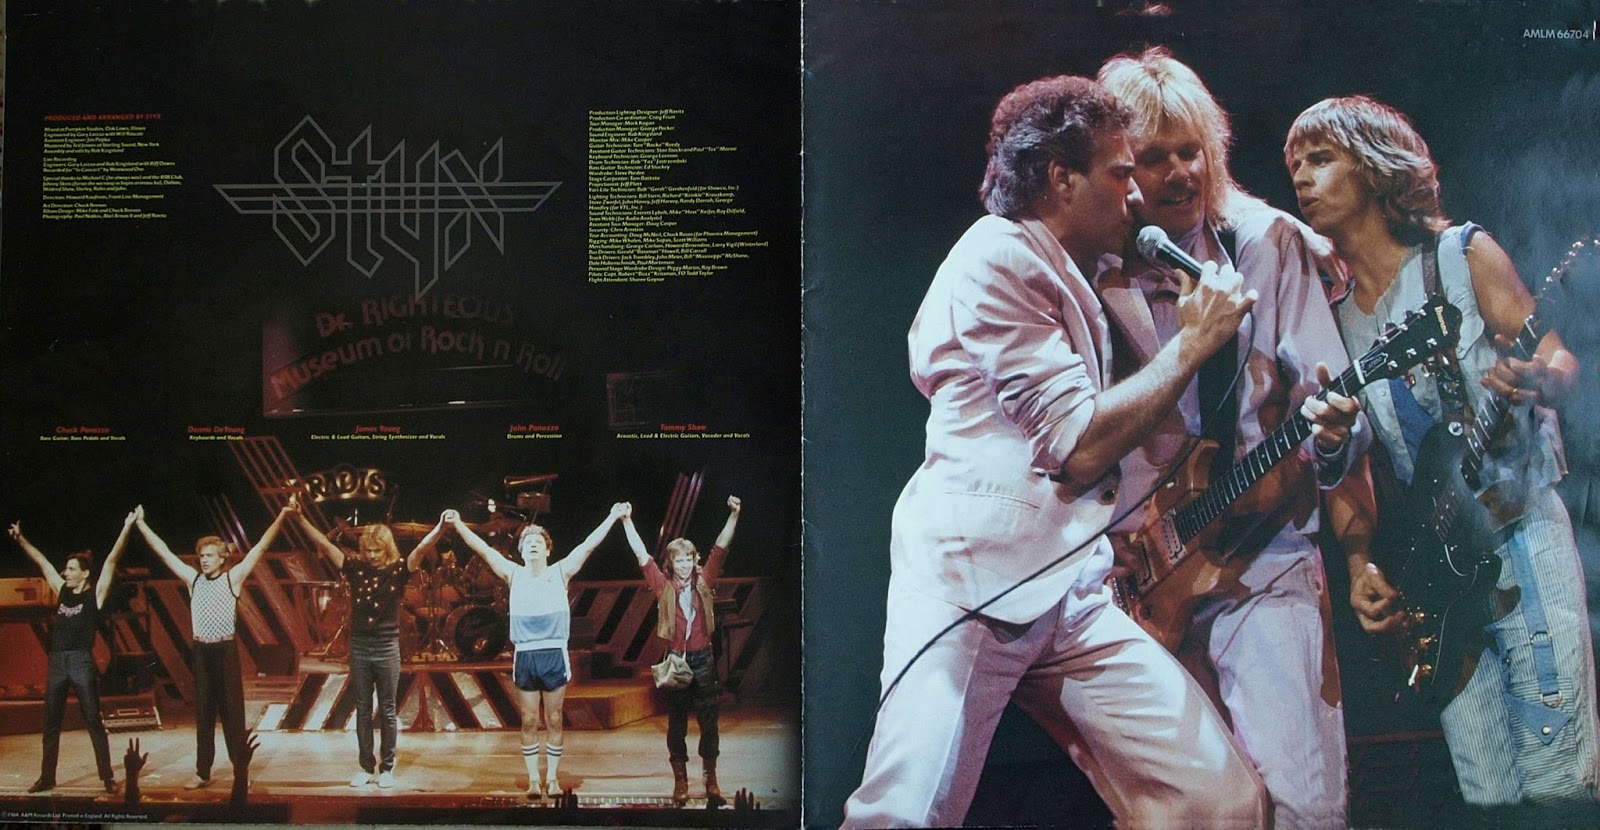 styx tour 1984